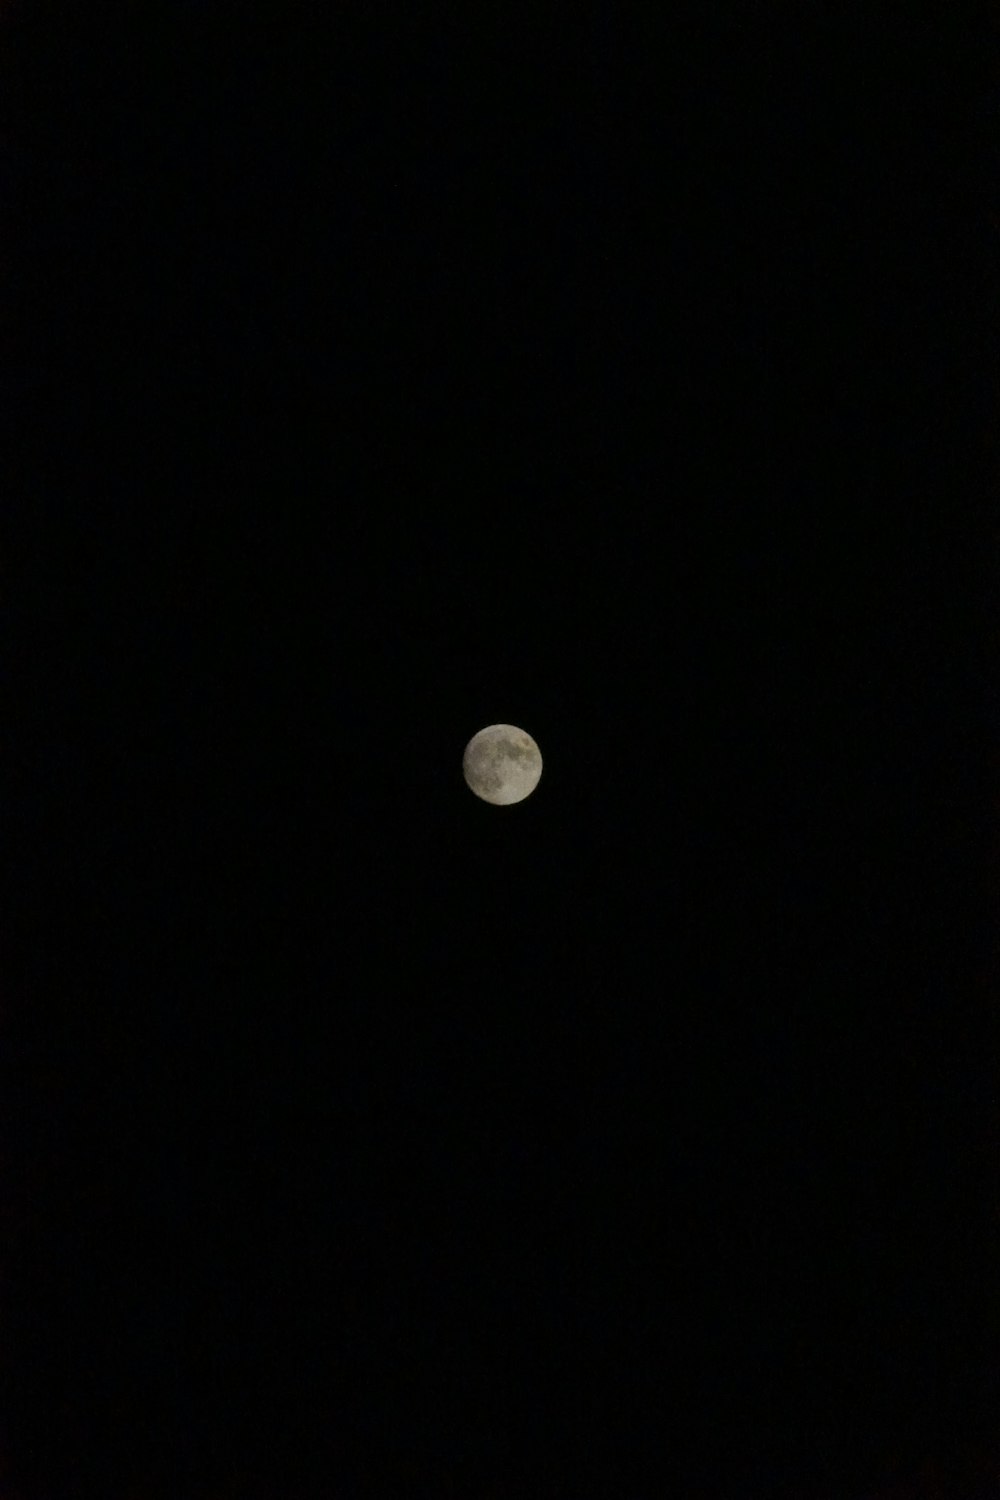 Une pleine lune est vue dans le ciel sombre